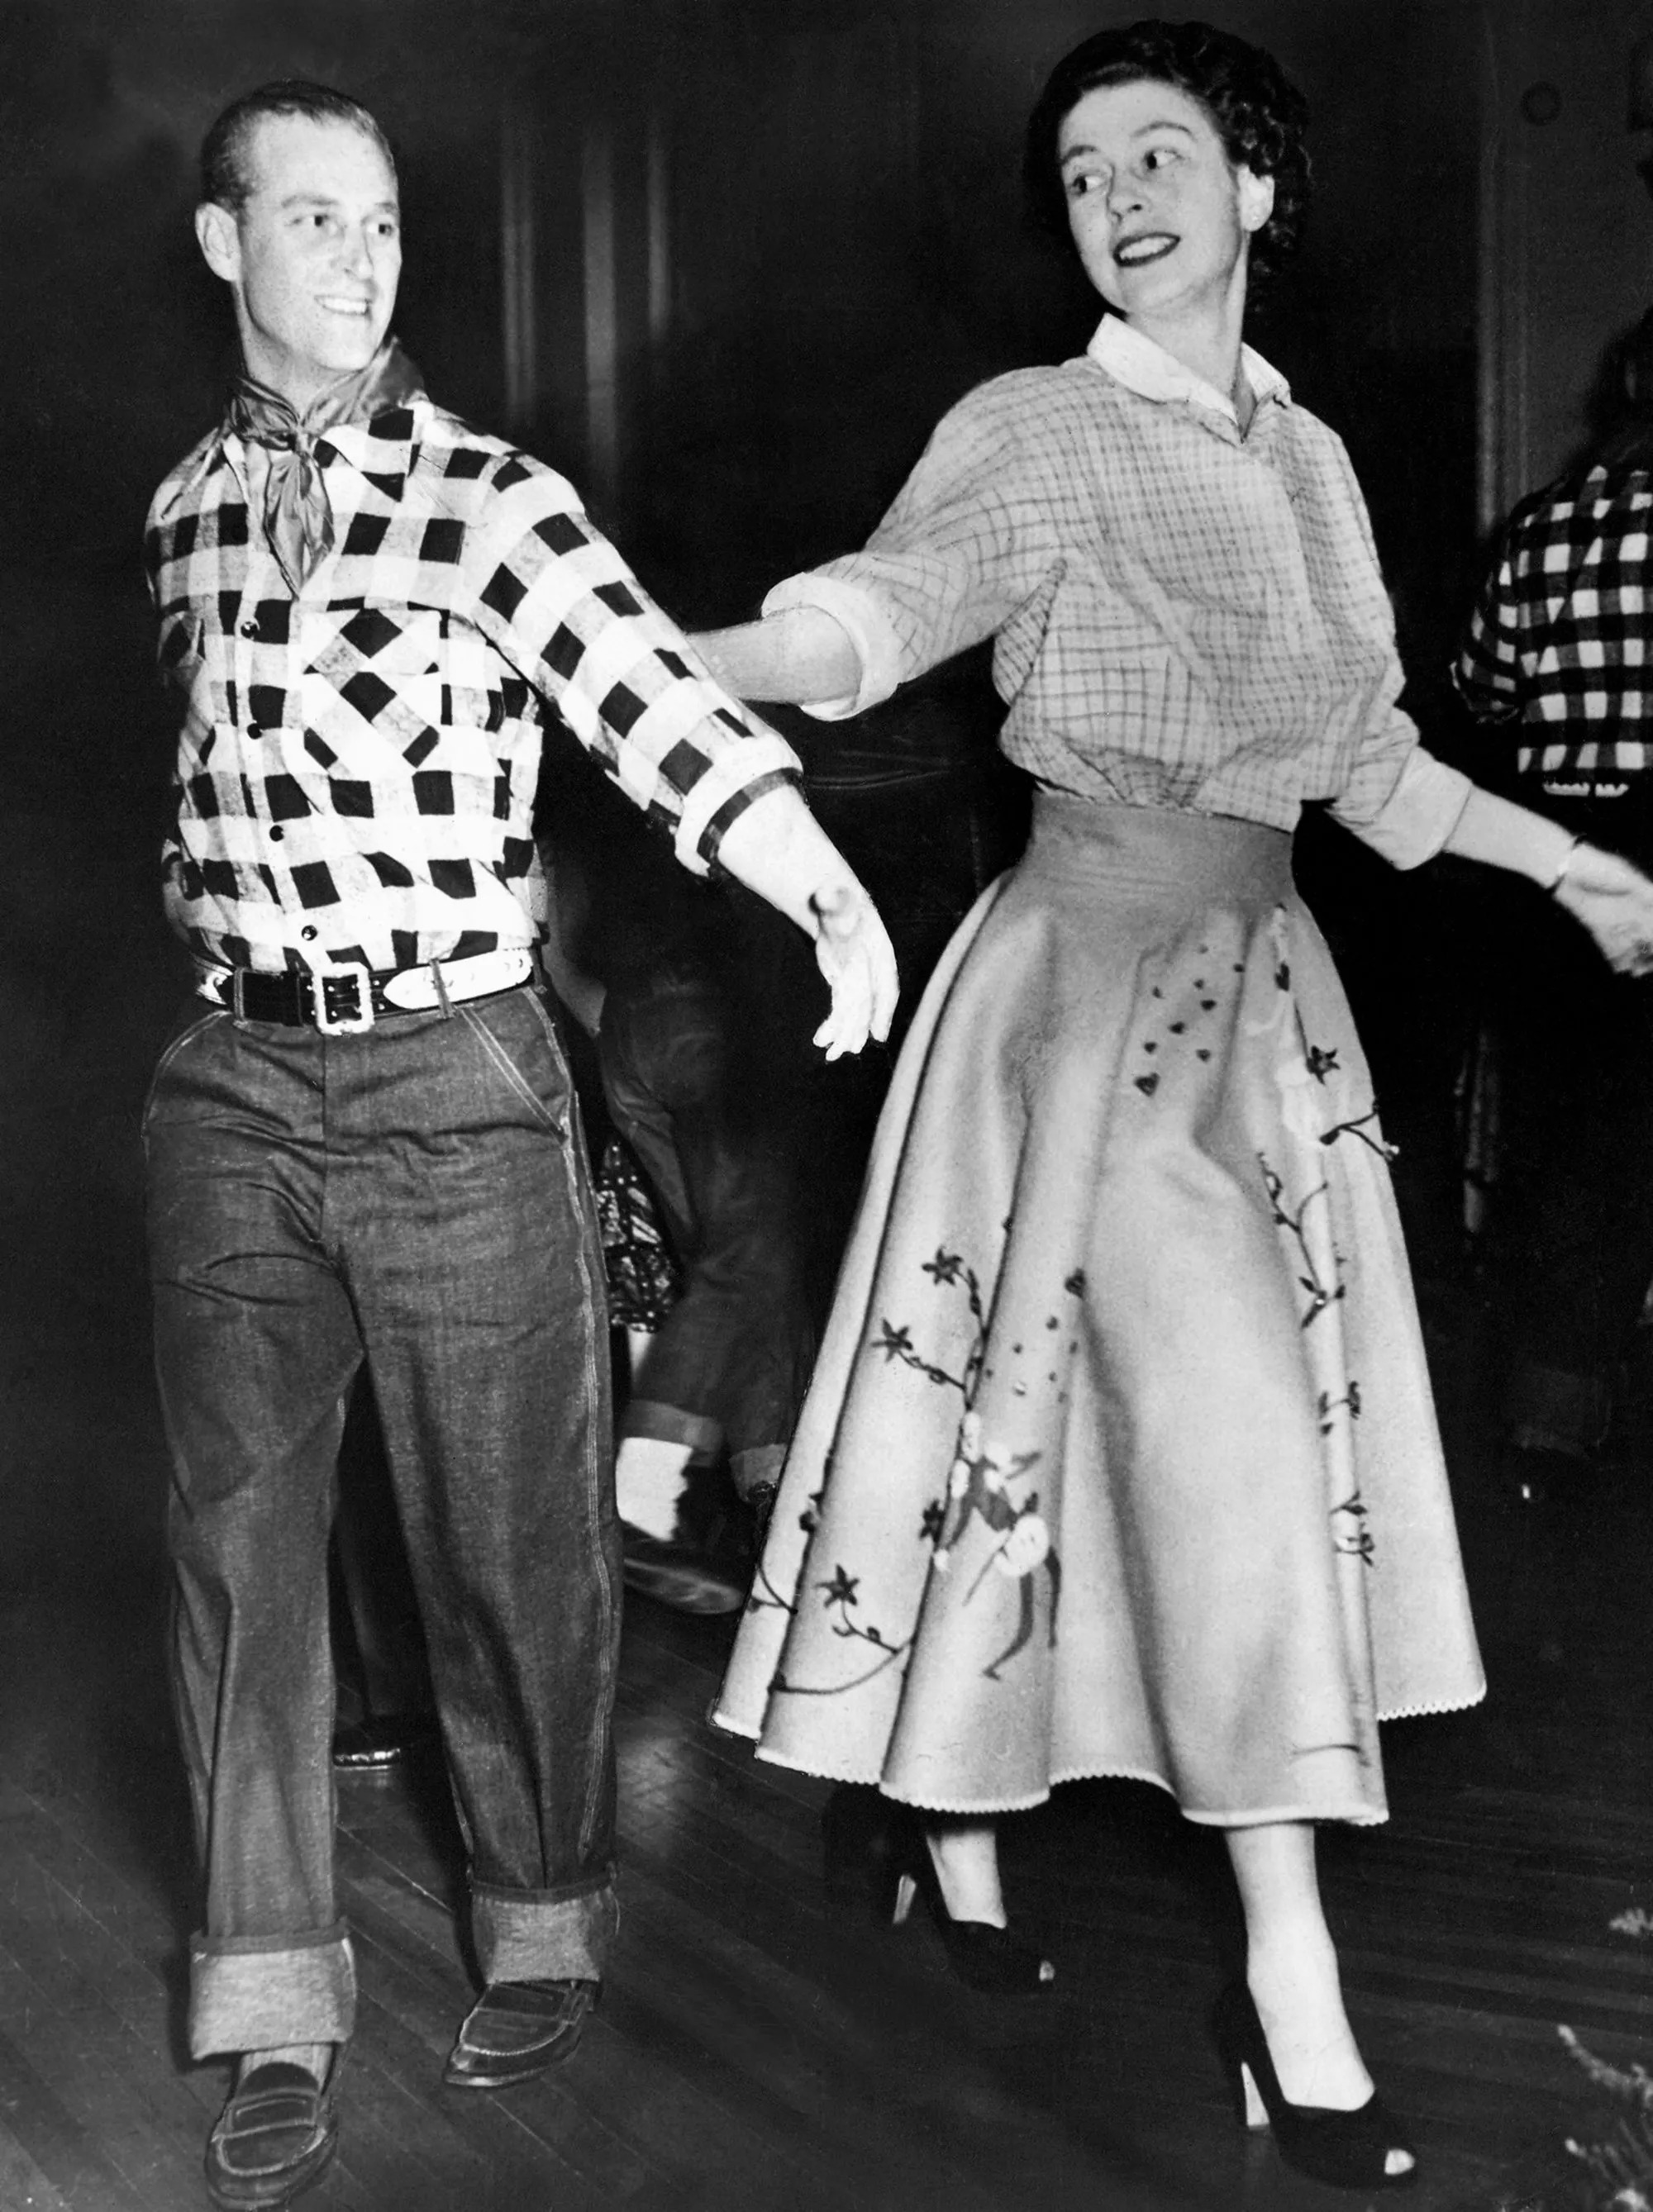 Герцог Эдинбургский танцует кадриль с принцессой Елизаветой на балу, устроенном в их честь в Оттаве генерал-губернатором виконтом Александером Тунисским во время королевского турне по Канаде, 17 октября 1951 года